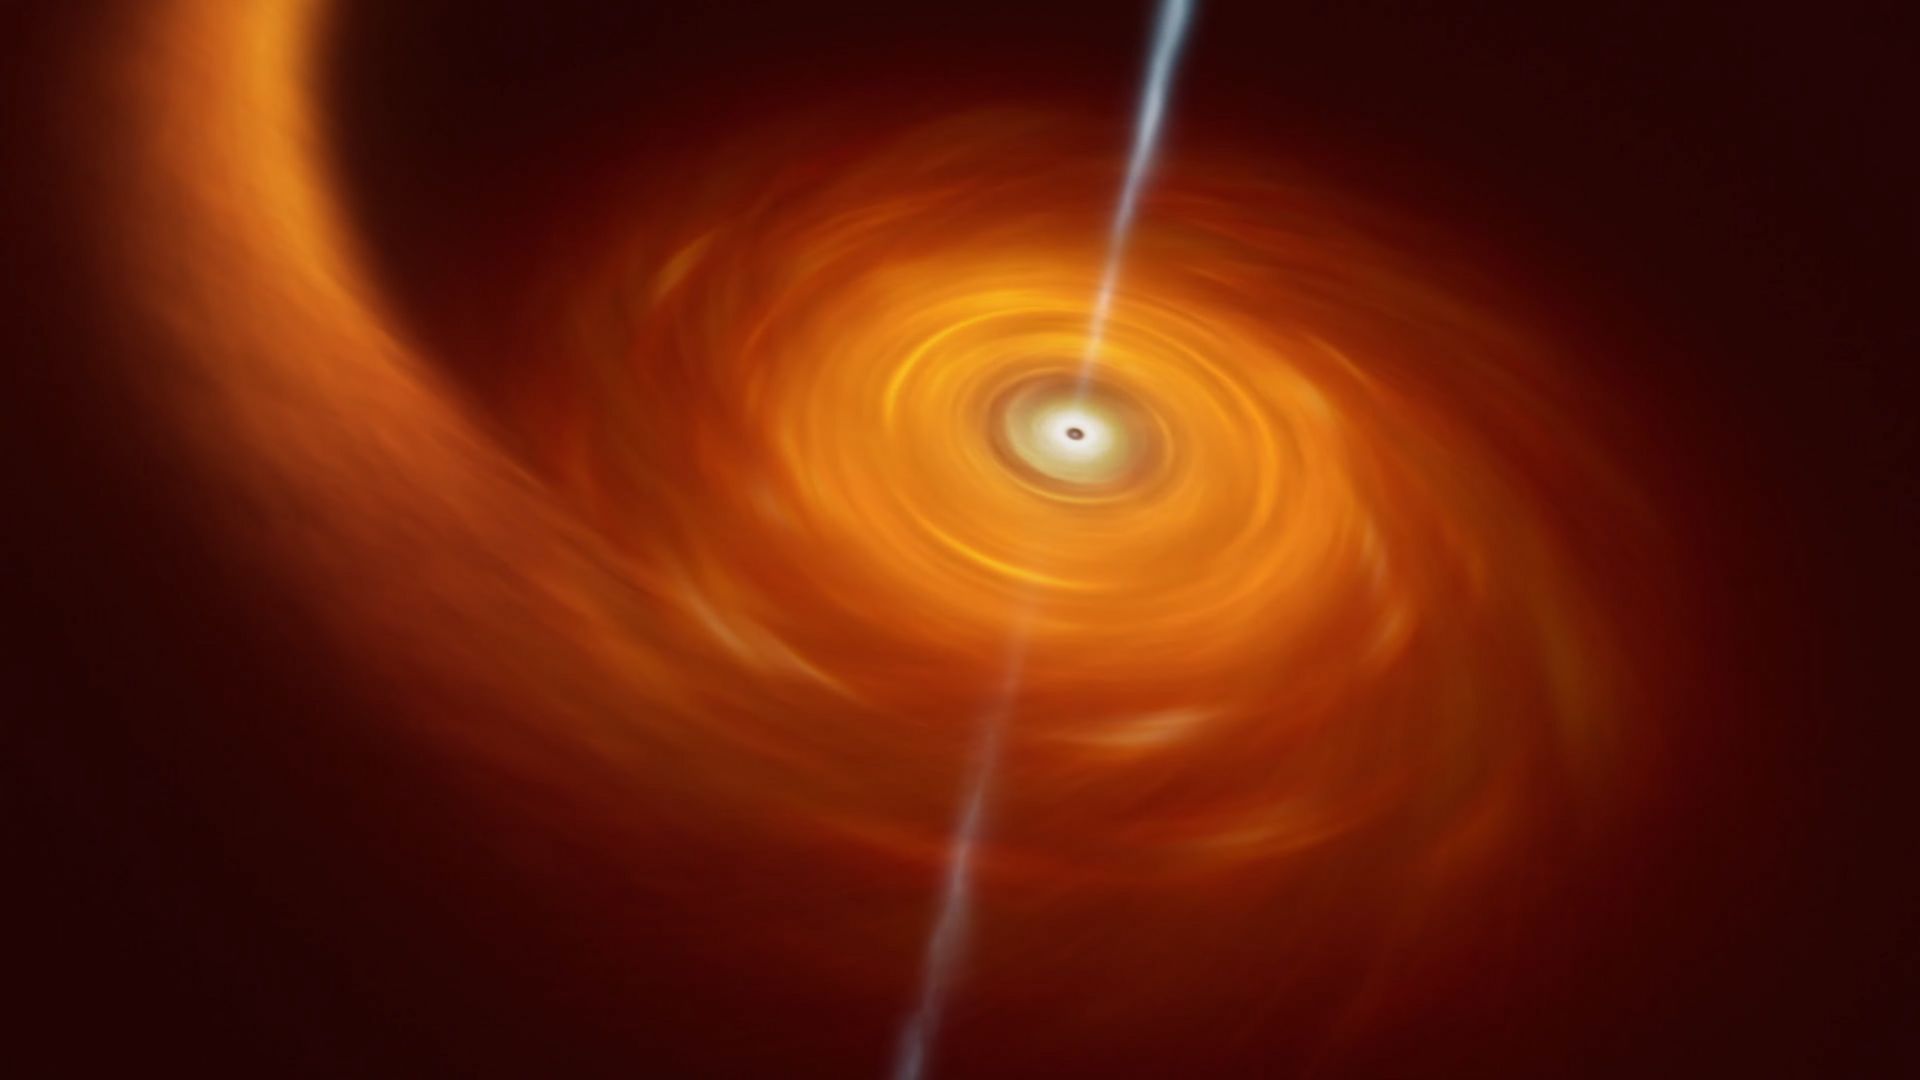 Nouvelle image, plus détaillée, d'un trou noir